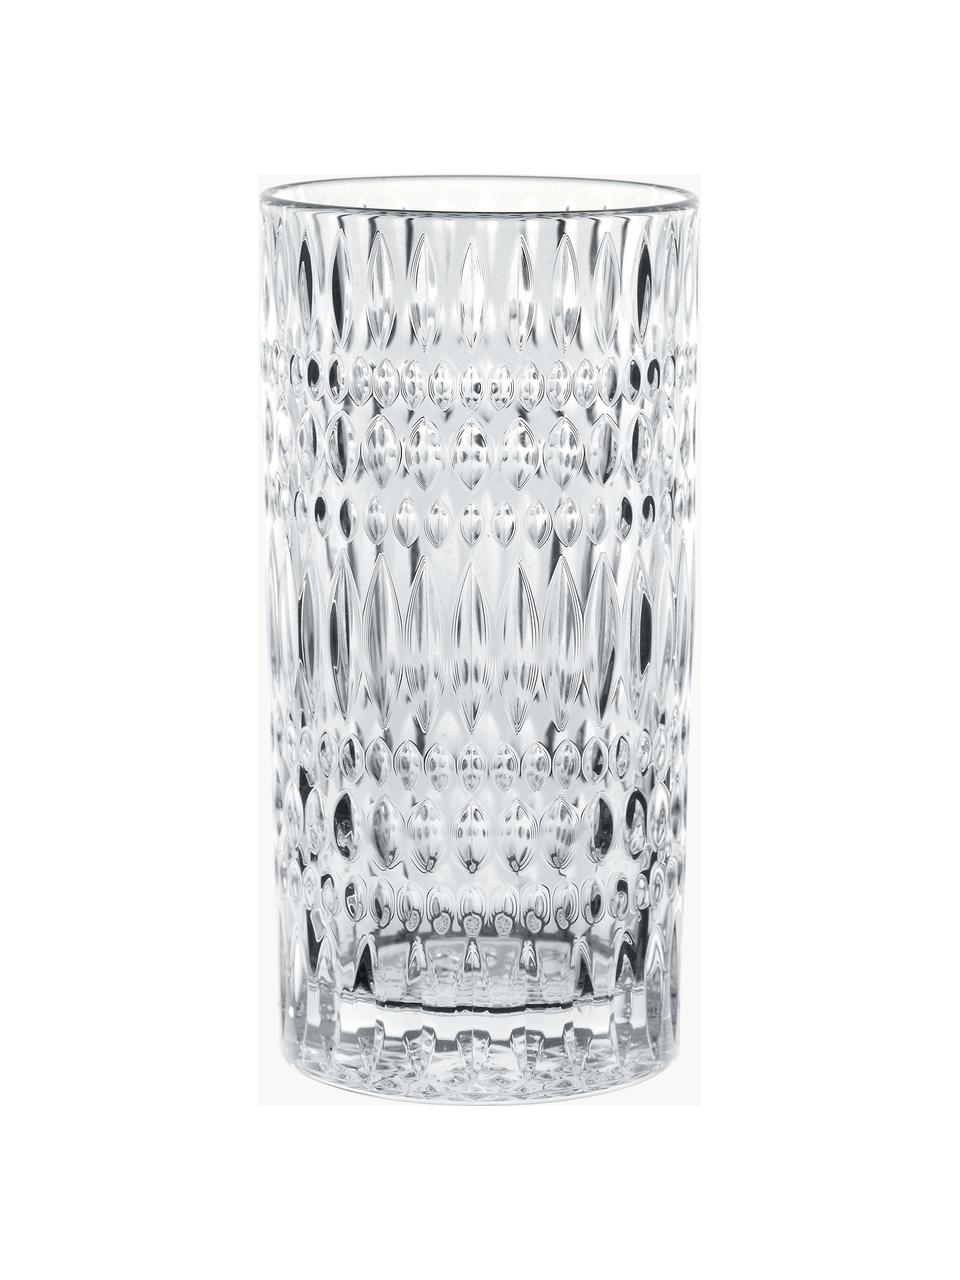 Kristall-Longdrinkgläser Ethno, 4 Stück, Kristallglas, Transparent, Ø 8 x H 15 cm, 434 ml